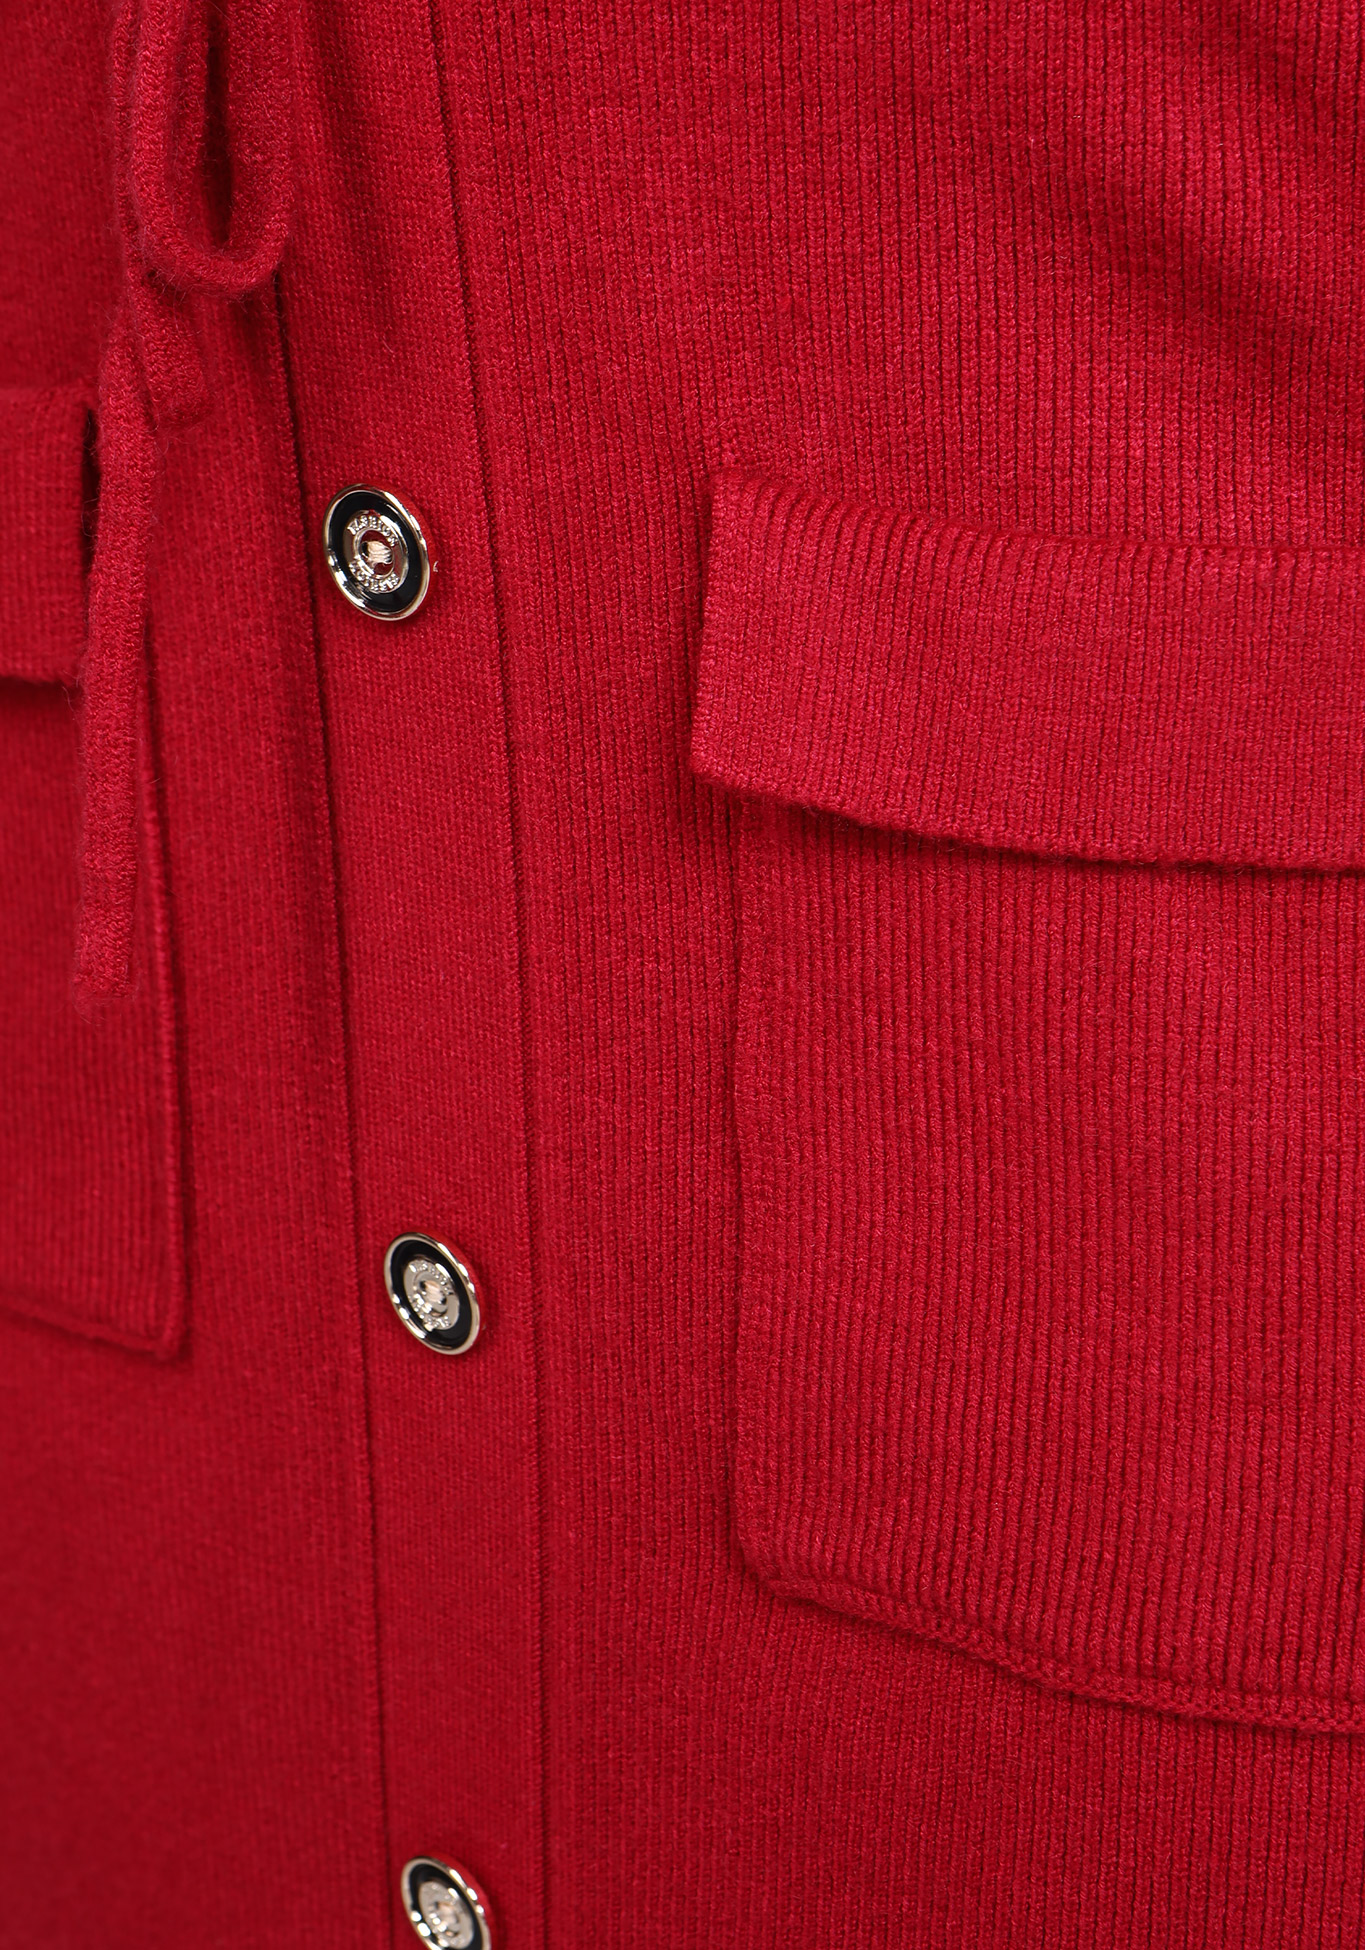 Женская юбка с карманами "Яркий образ", размер 52, цвет красный - фото 5